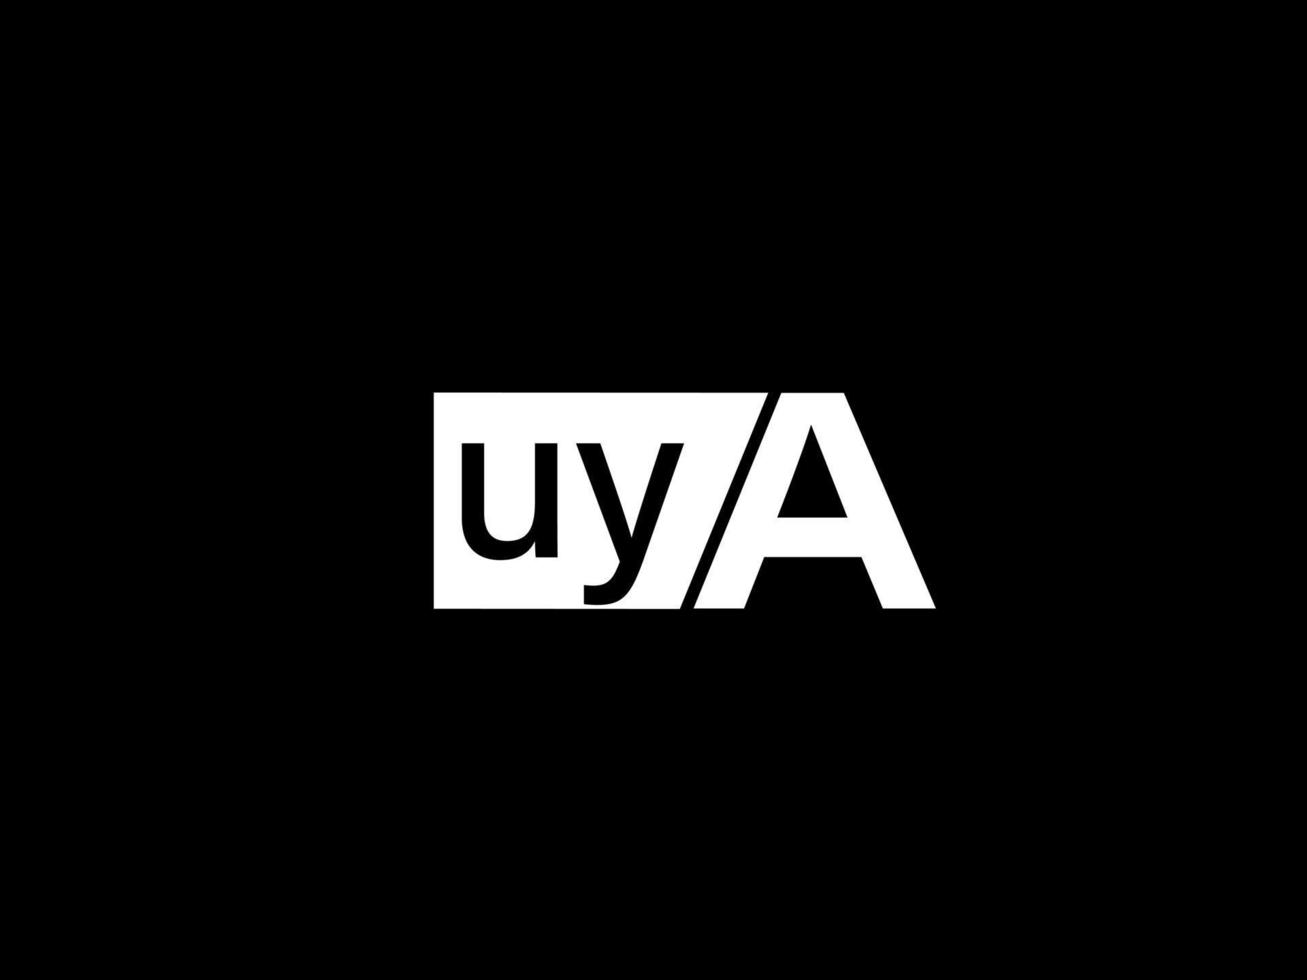 logo uya et art vectoriel de conception graphique, icônes isolées sur fond noir